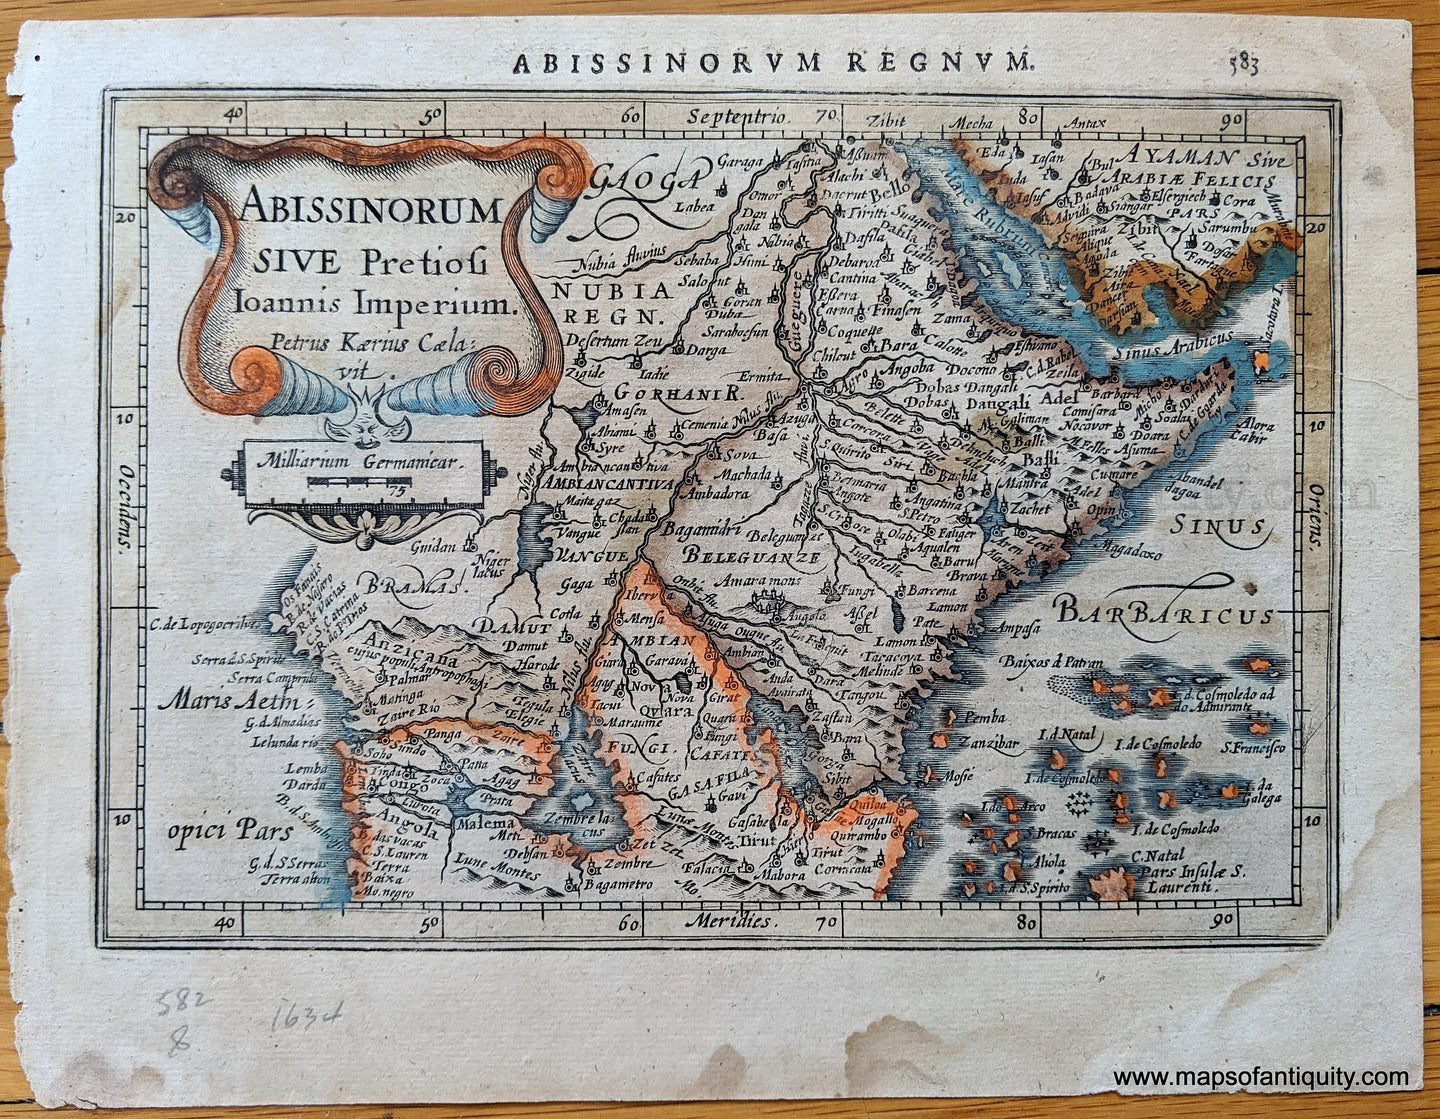 Genuine-Antique-Map-Abissinorum-Sive-Pretiosi-Ioannis-Imperium-Petrus-Kaeirus-Cela:vit.---Abissinia-Africa-Africa--1628-Mercator-Maps-Of-Antiquity-1800s-19th-century